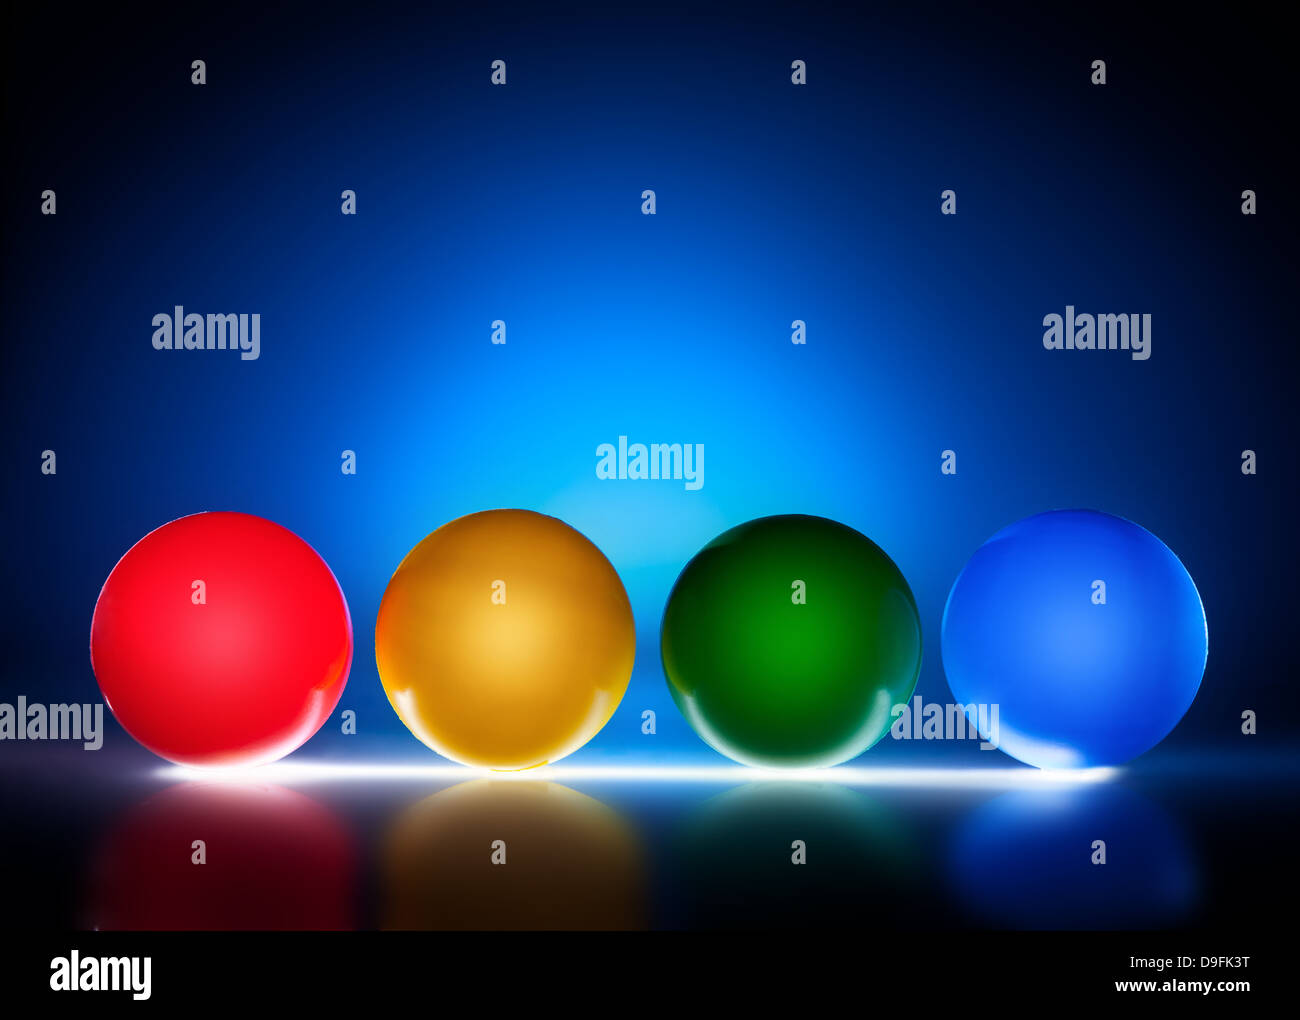 Bolas de plástico color iluminada, la luz de fondo azul Foto de stock